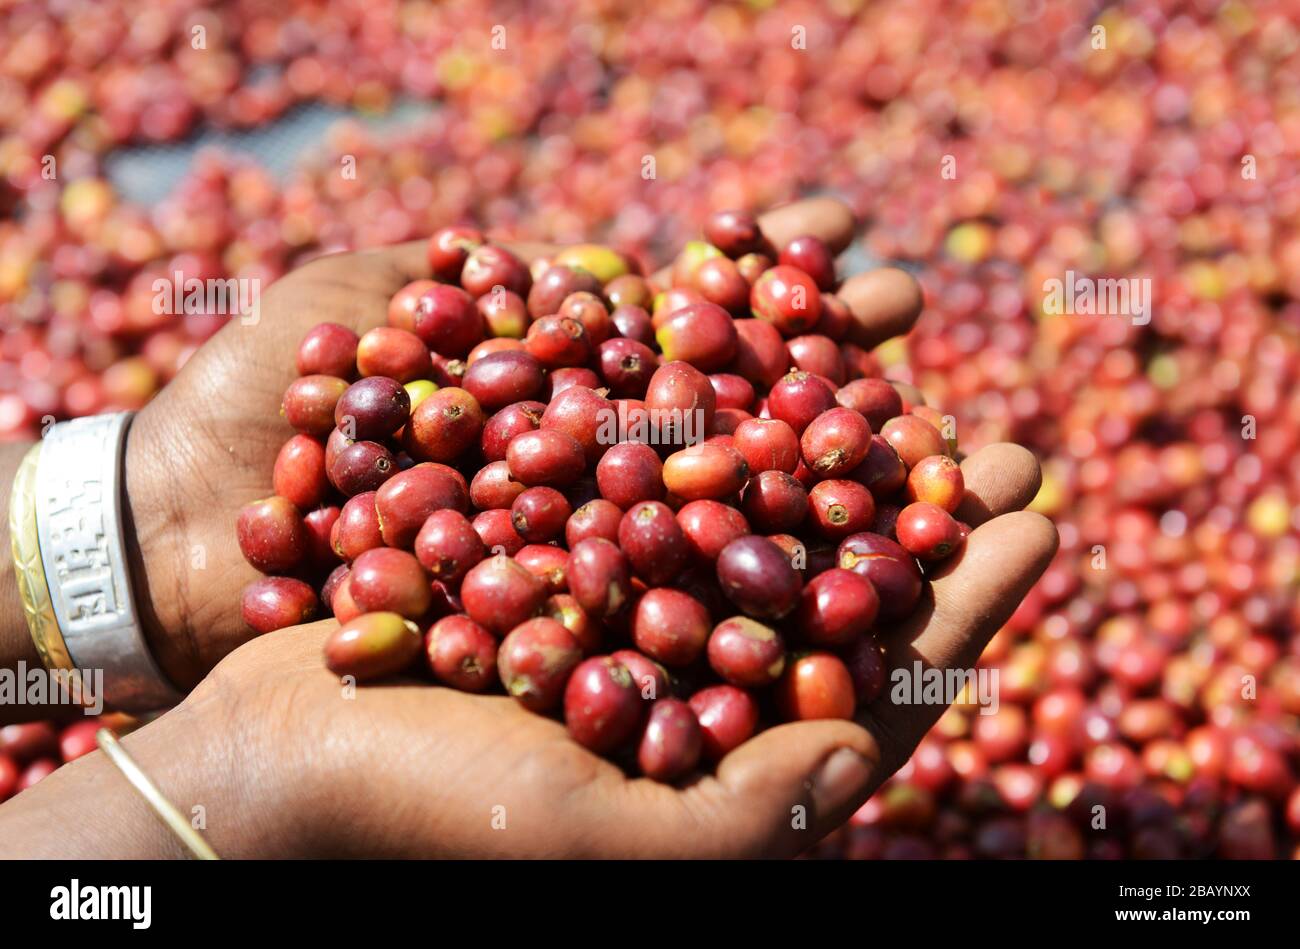 Los granos de café se clasifican y se secan al sol en camas secadoras de la finca de café Tega&Tula en el rigíón Kaffa de Etiopía. Foto de stock